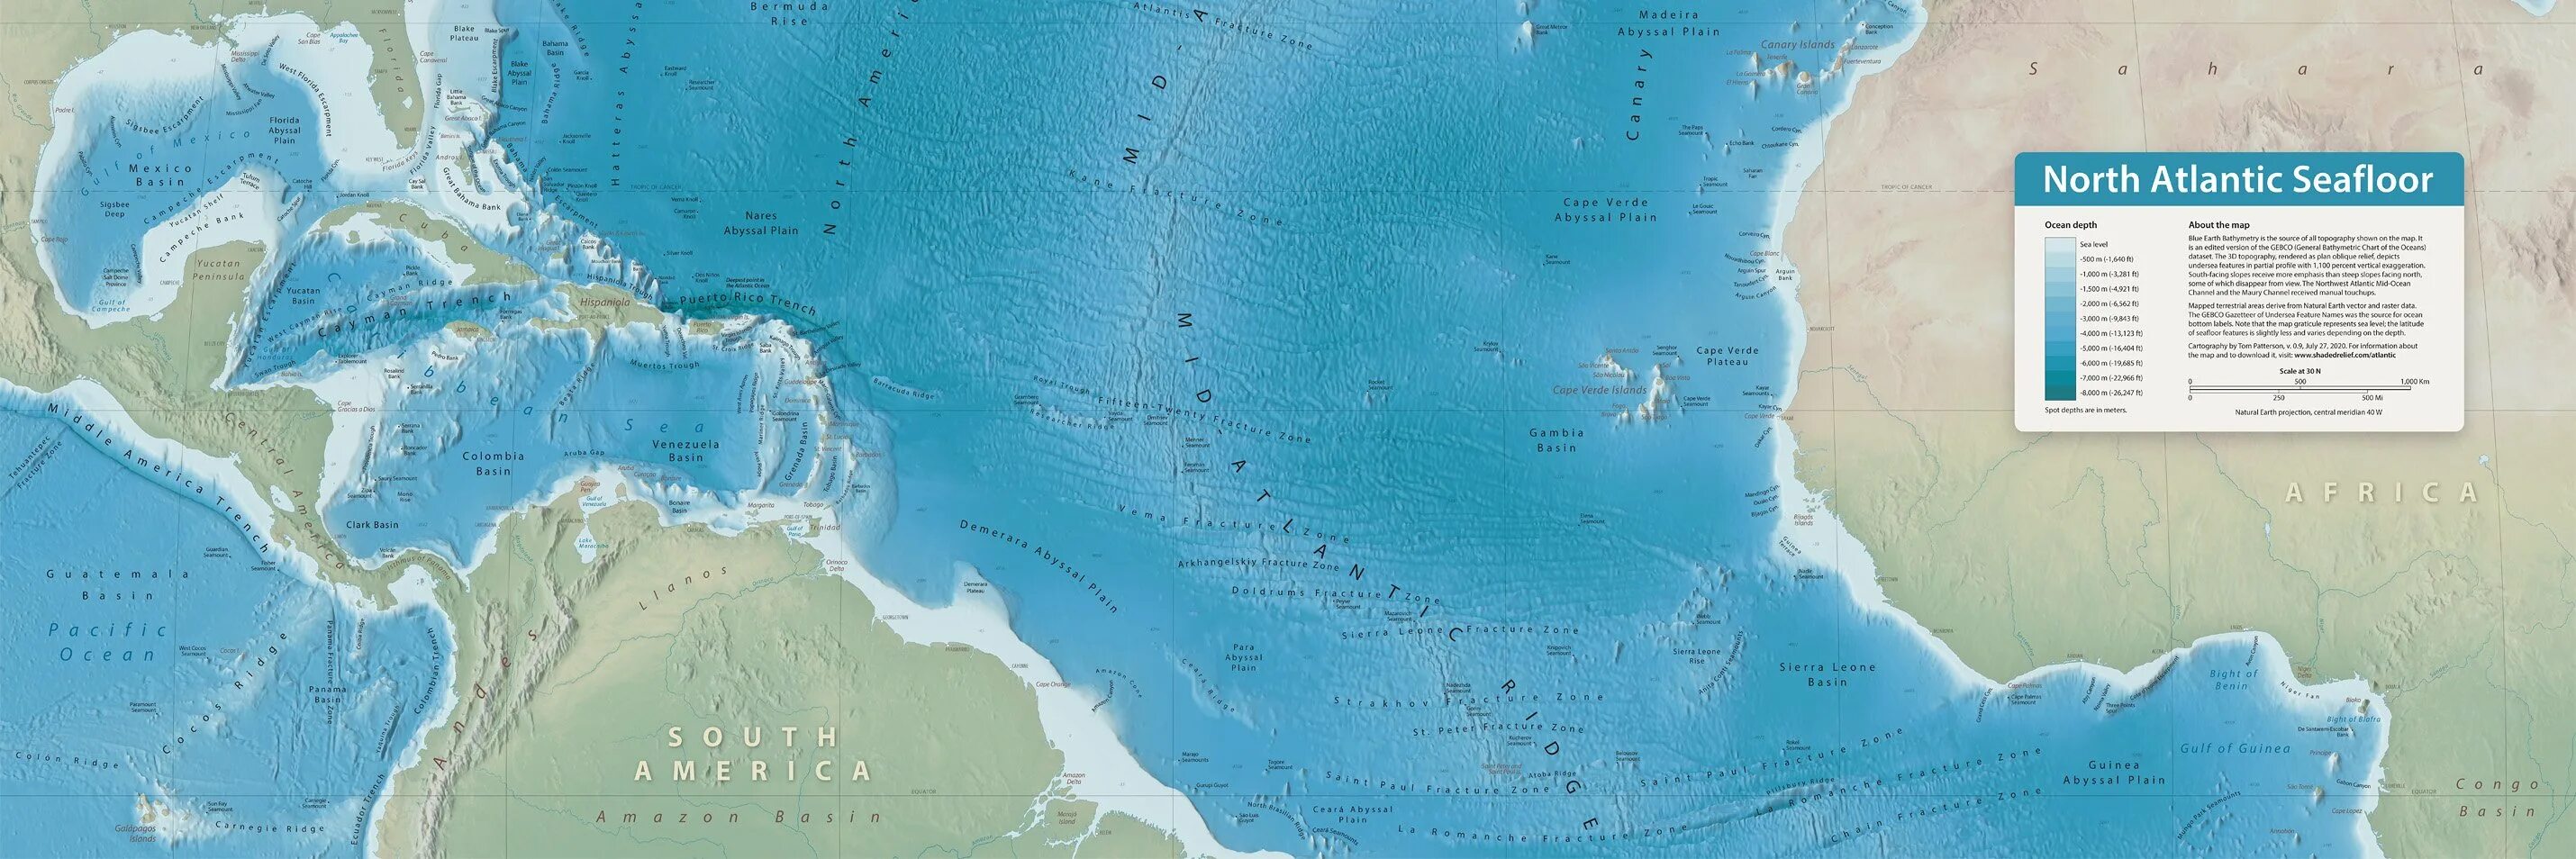 North Atlantic Map. Моря Атлантического океана на карте. Атлантический океан на карте. North Atlantic Ocean. Атлантический океан особенности географического положения